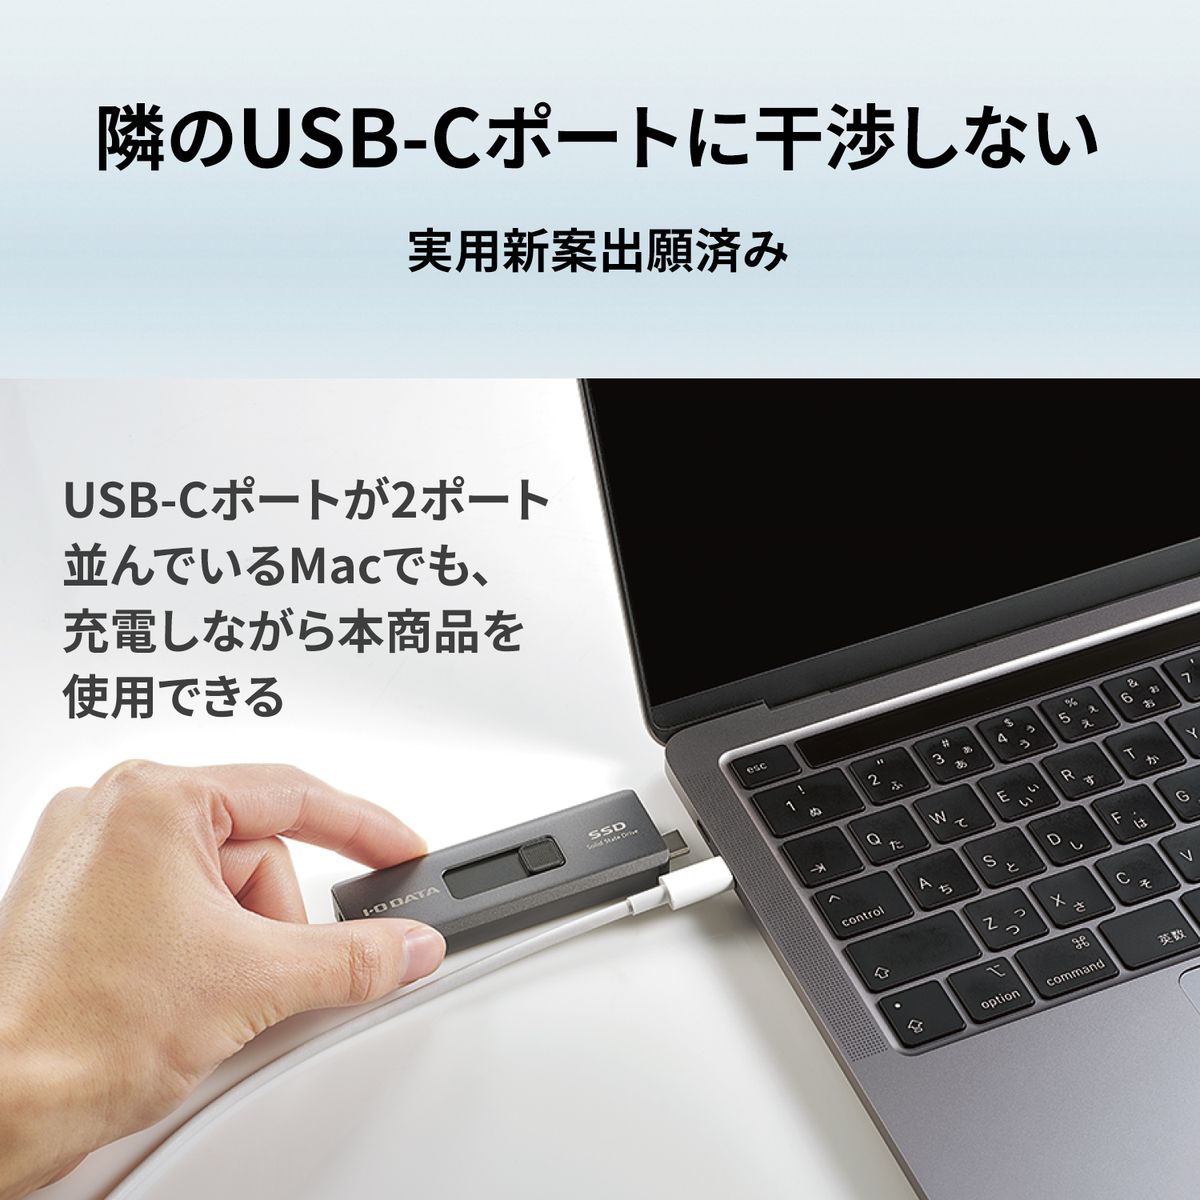 ひかりＴＶショッピング | USB-A&USB-Cコネクター搭載 スティックSSD